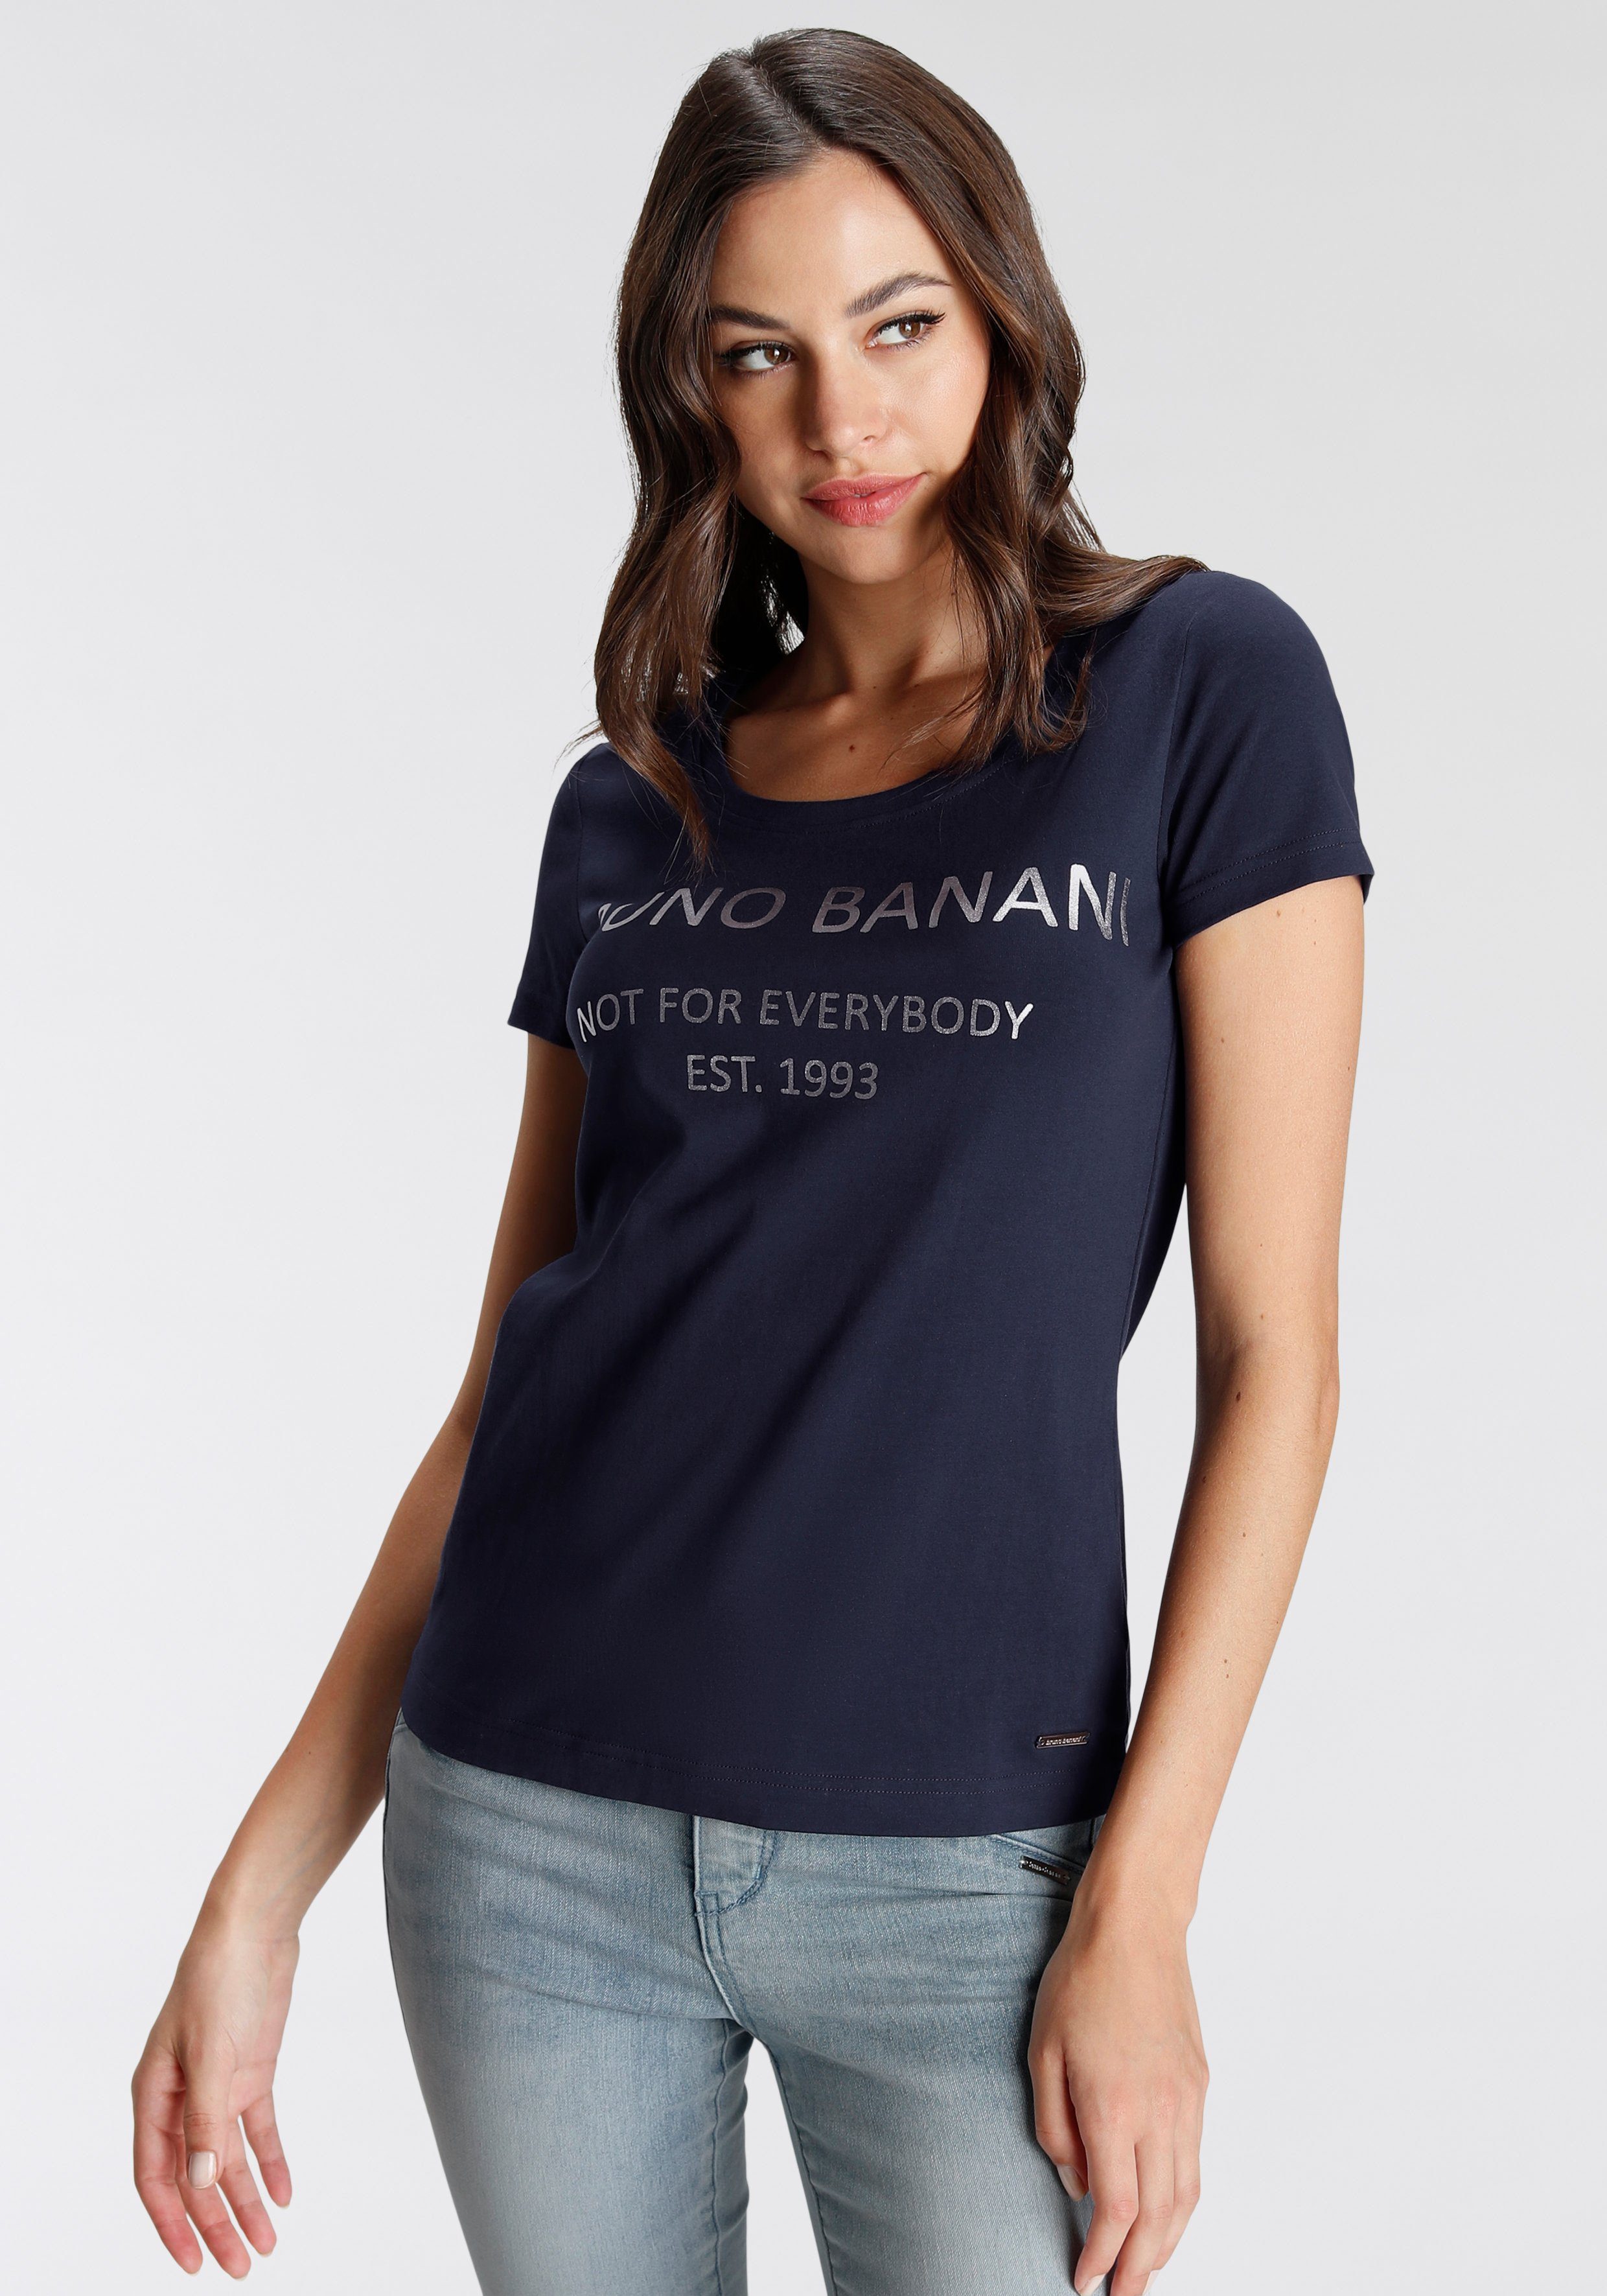 Logodruck marine T-Shirt Bruno Banani mit KOLLEKTION NEUE goldfarbenem